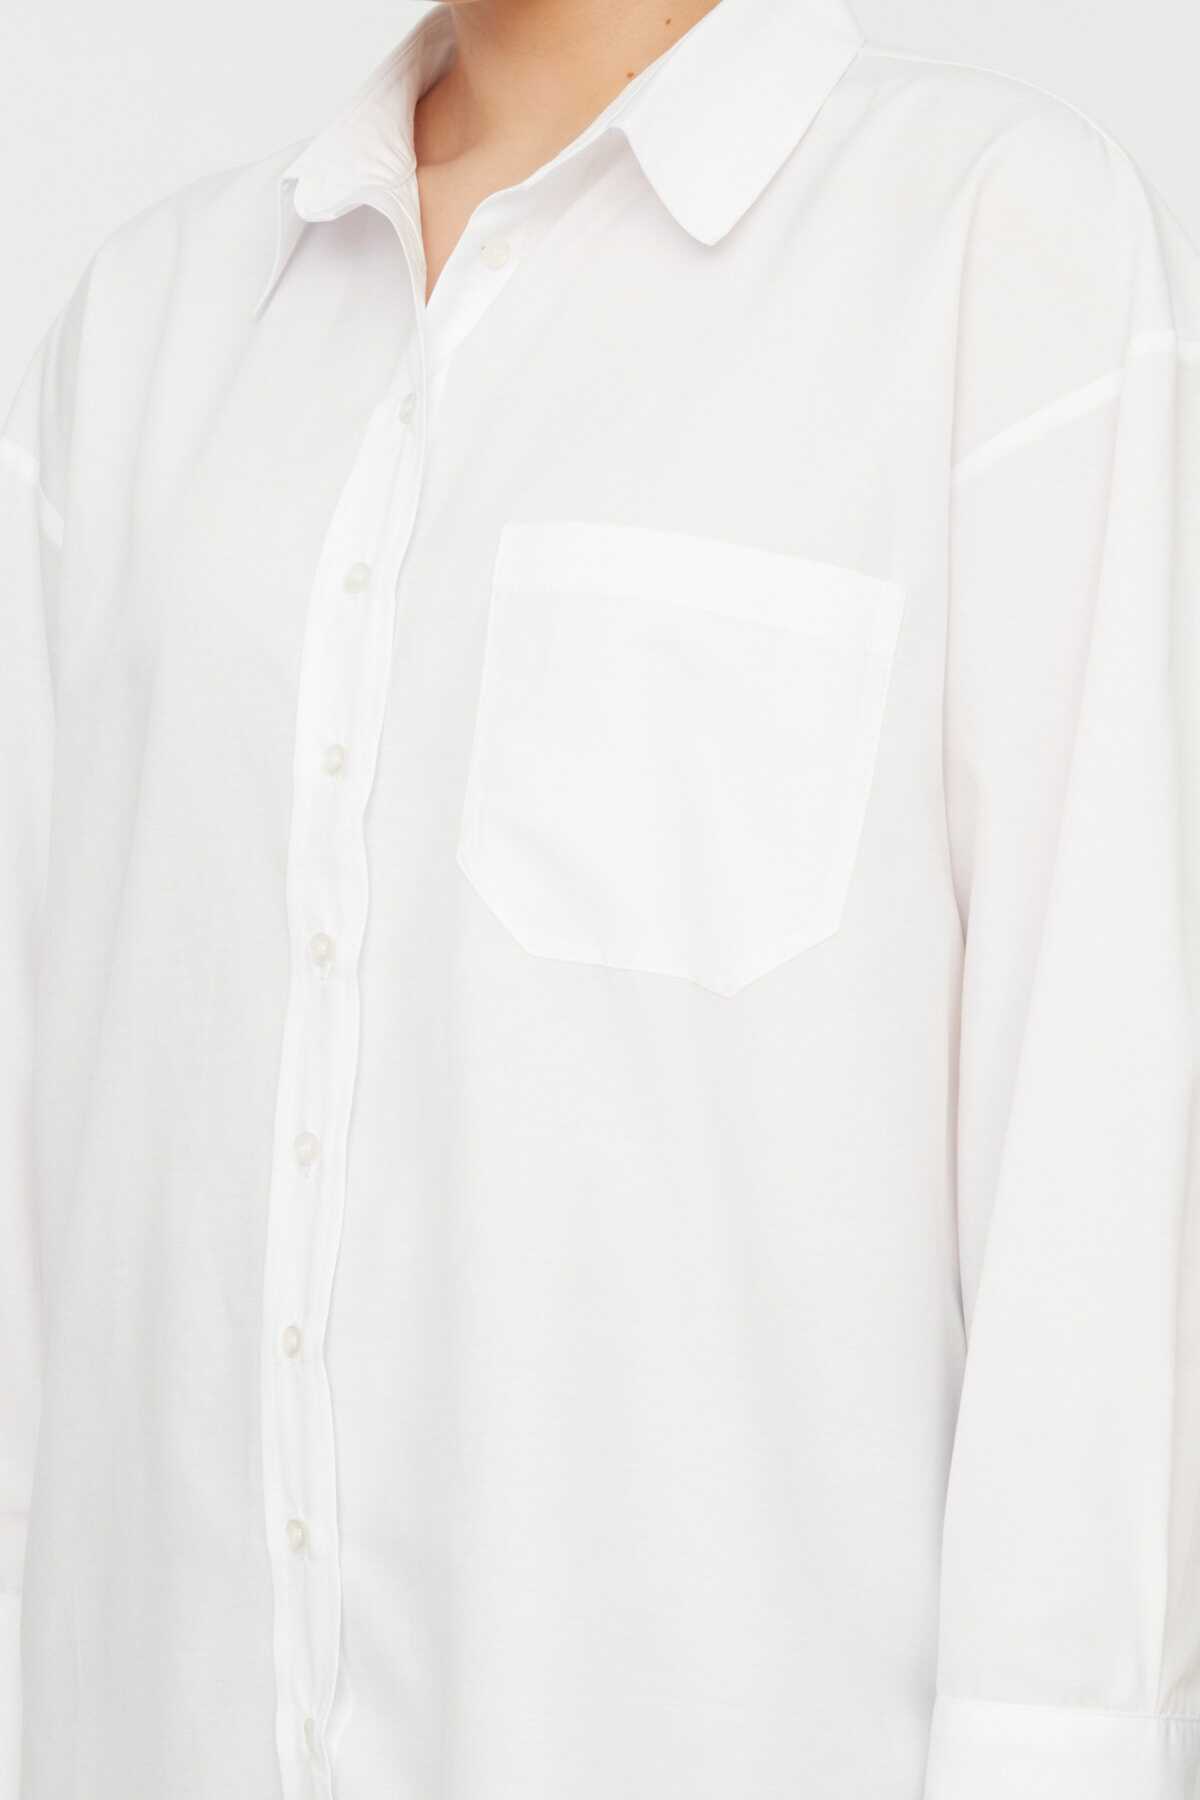 پیراهن یقه کلاسیک سایز بزرگ زنانه سفید برند Trendyol Curve